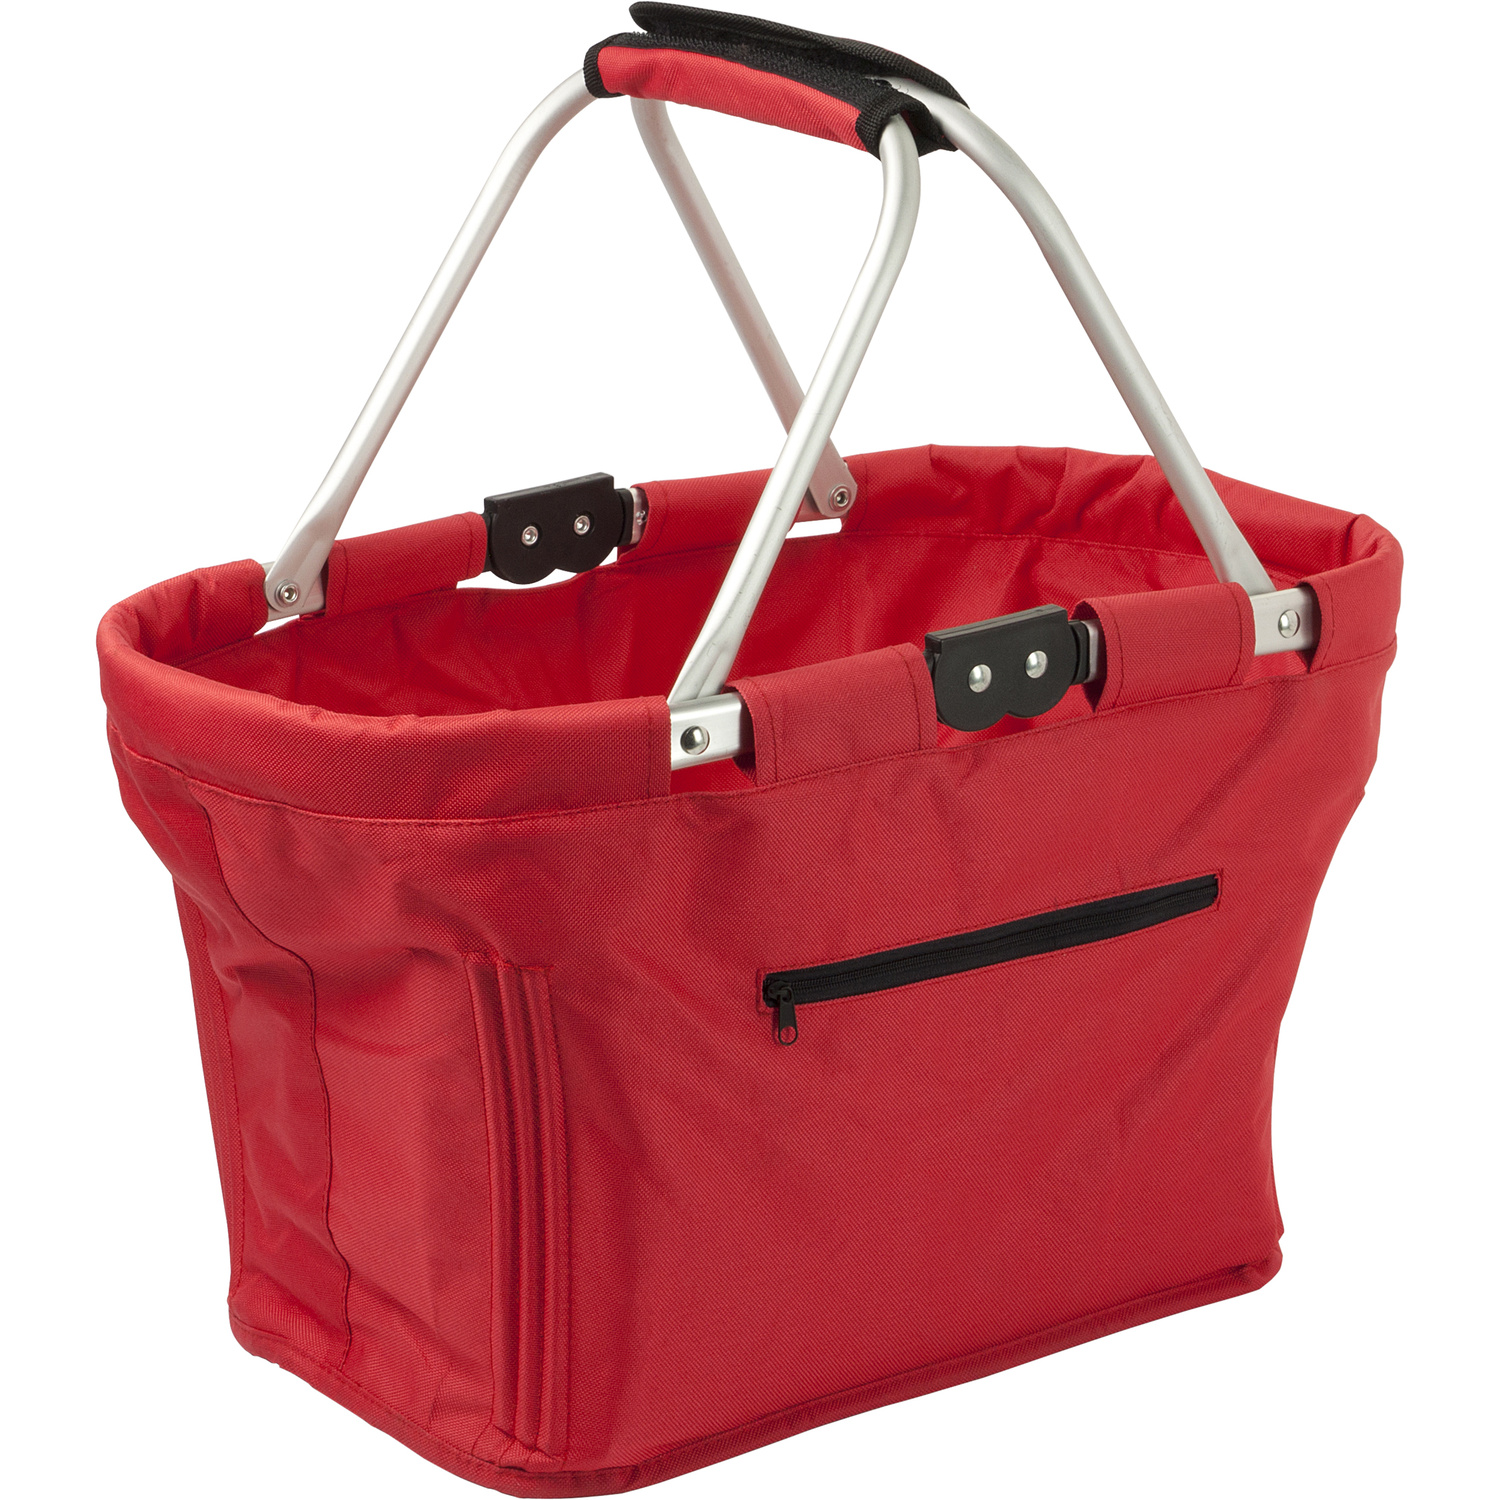 006304 008999999 3d045 frt pro01 fal - Foldable carrier shopping bag